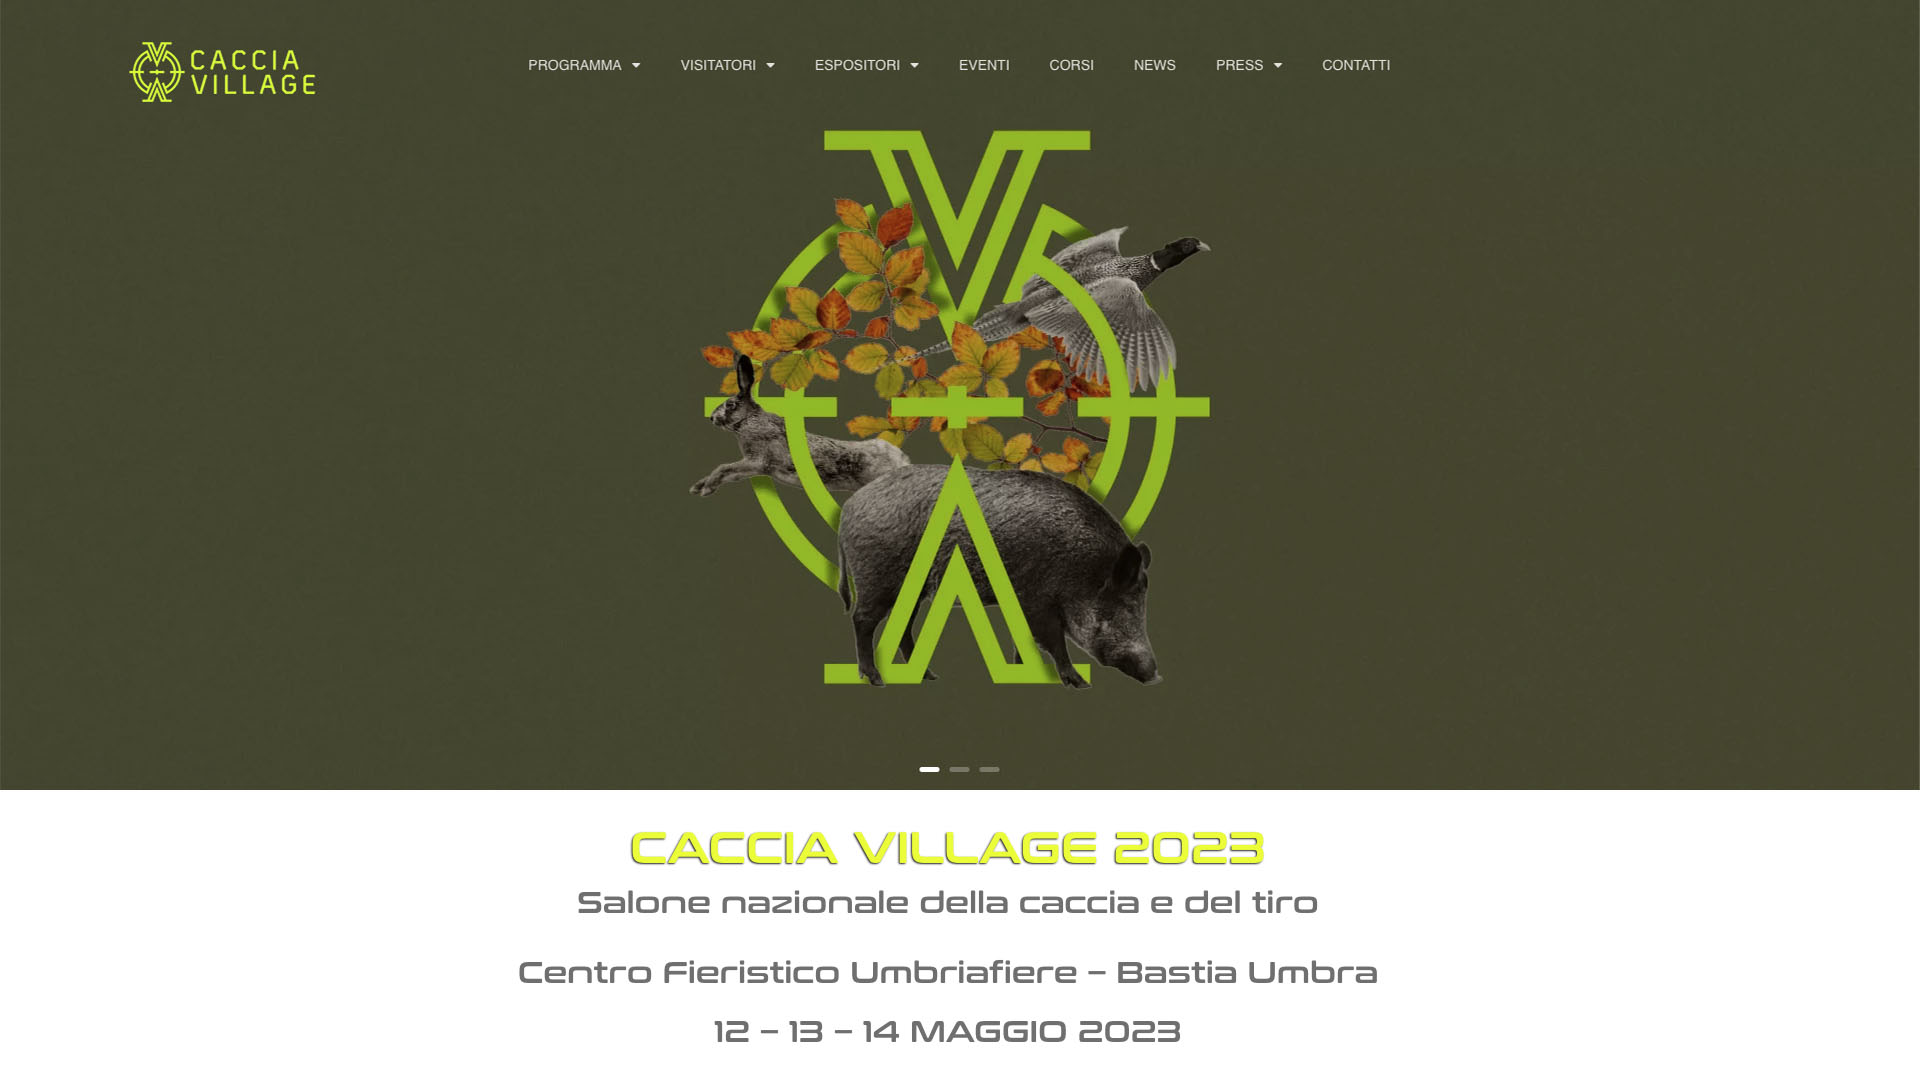 Caccia Village 2023 si tiene dal 12 al 14 maggio presso il Centro fieristico Umbriafiere a Bastia Umbra (PG)